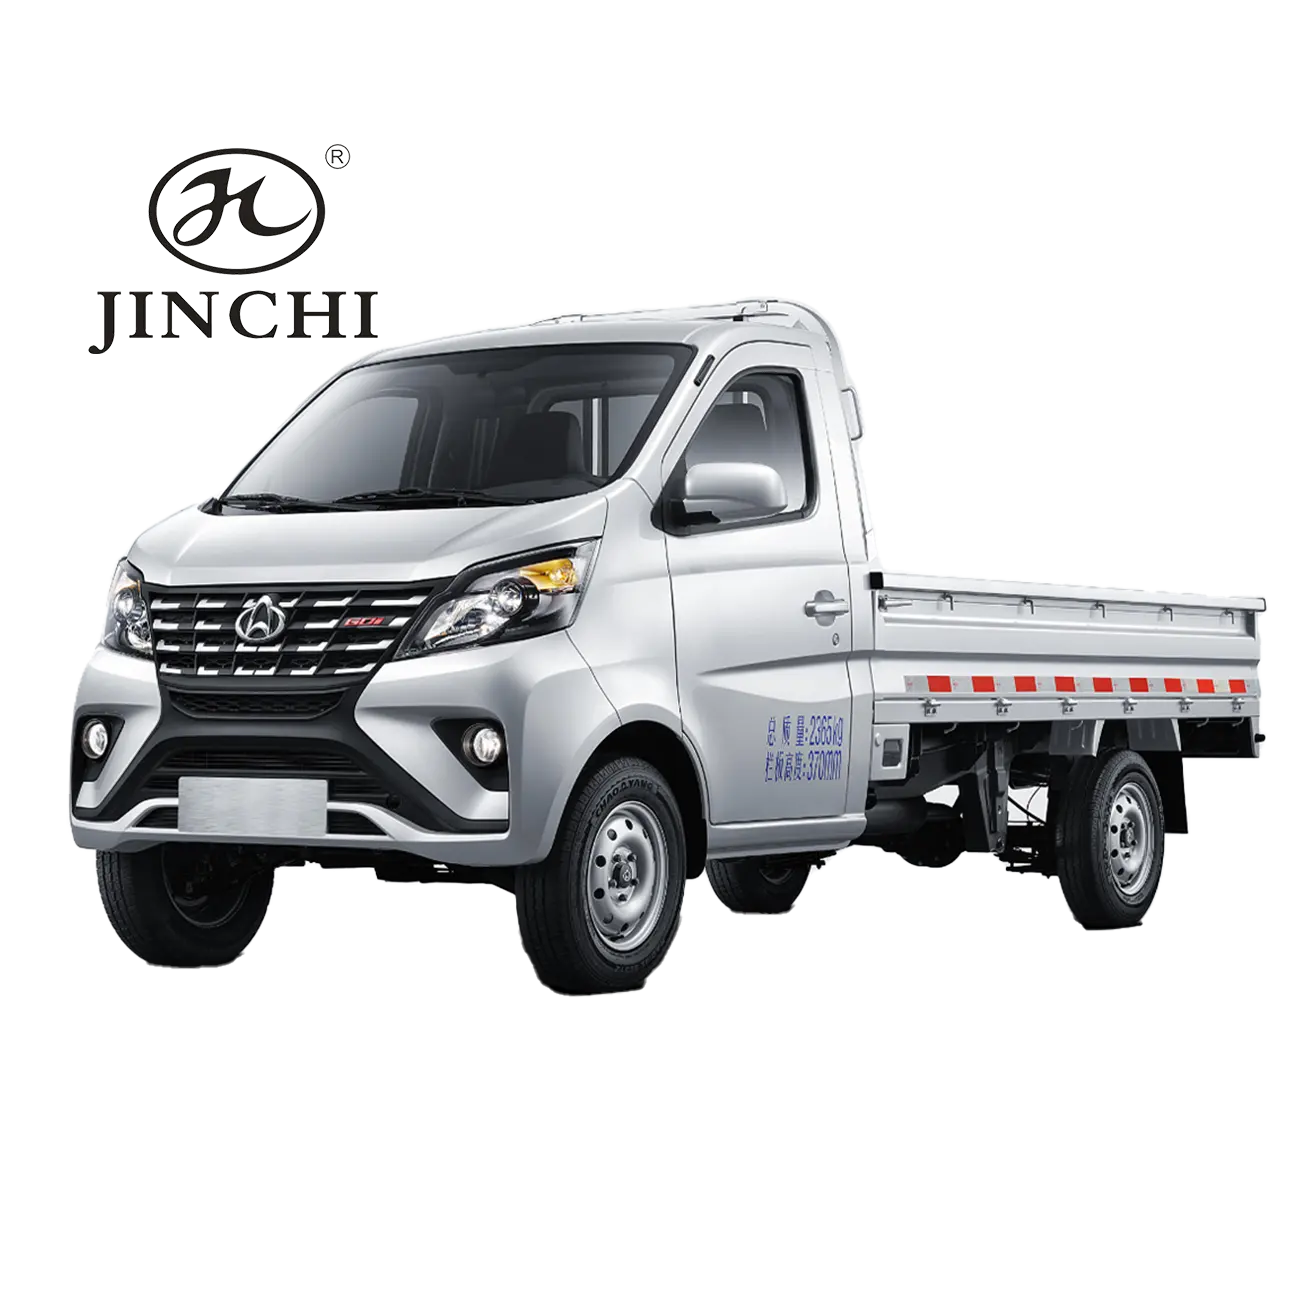 새로운 창안 싱카 가솔린 1.5L 미니 경트럭 유틸리티 차량 중국 미니 픽업화물 밴 트럭